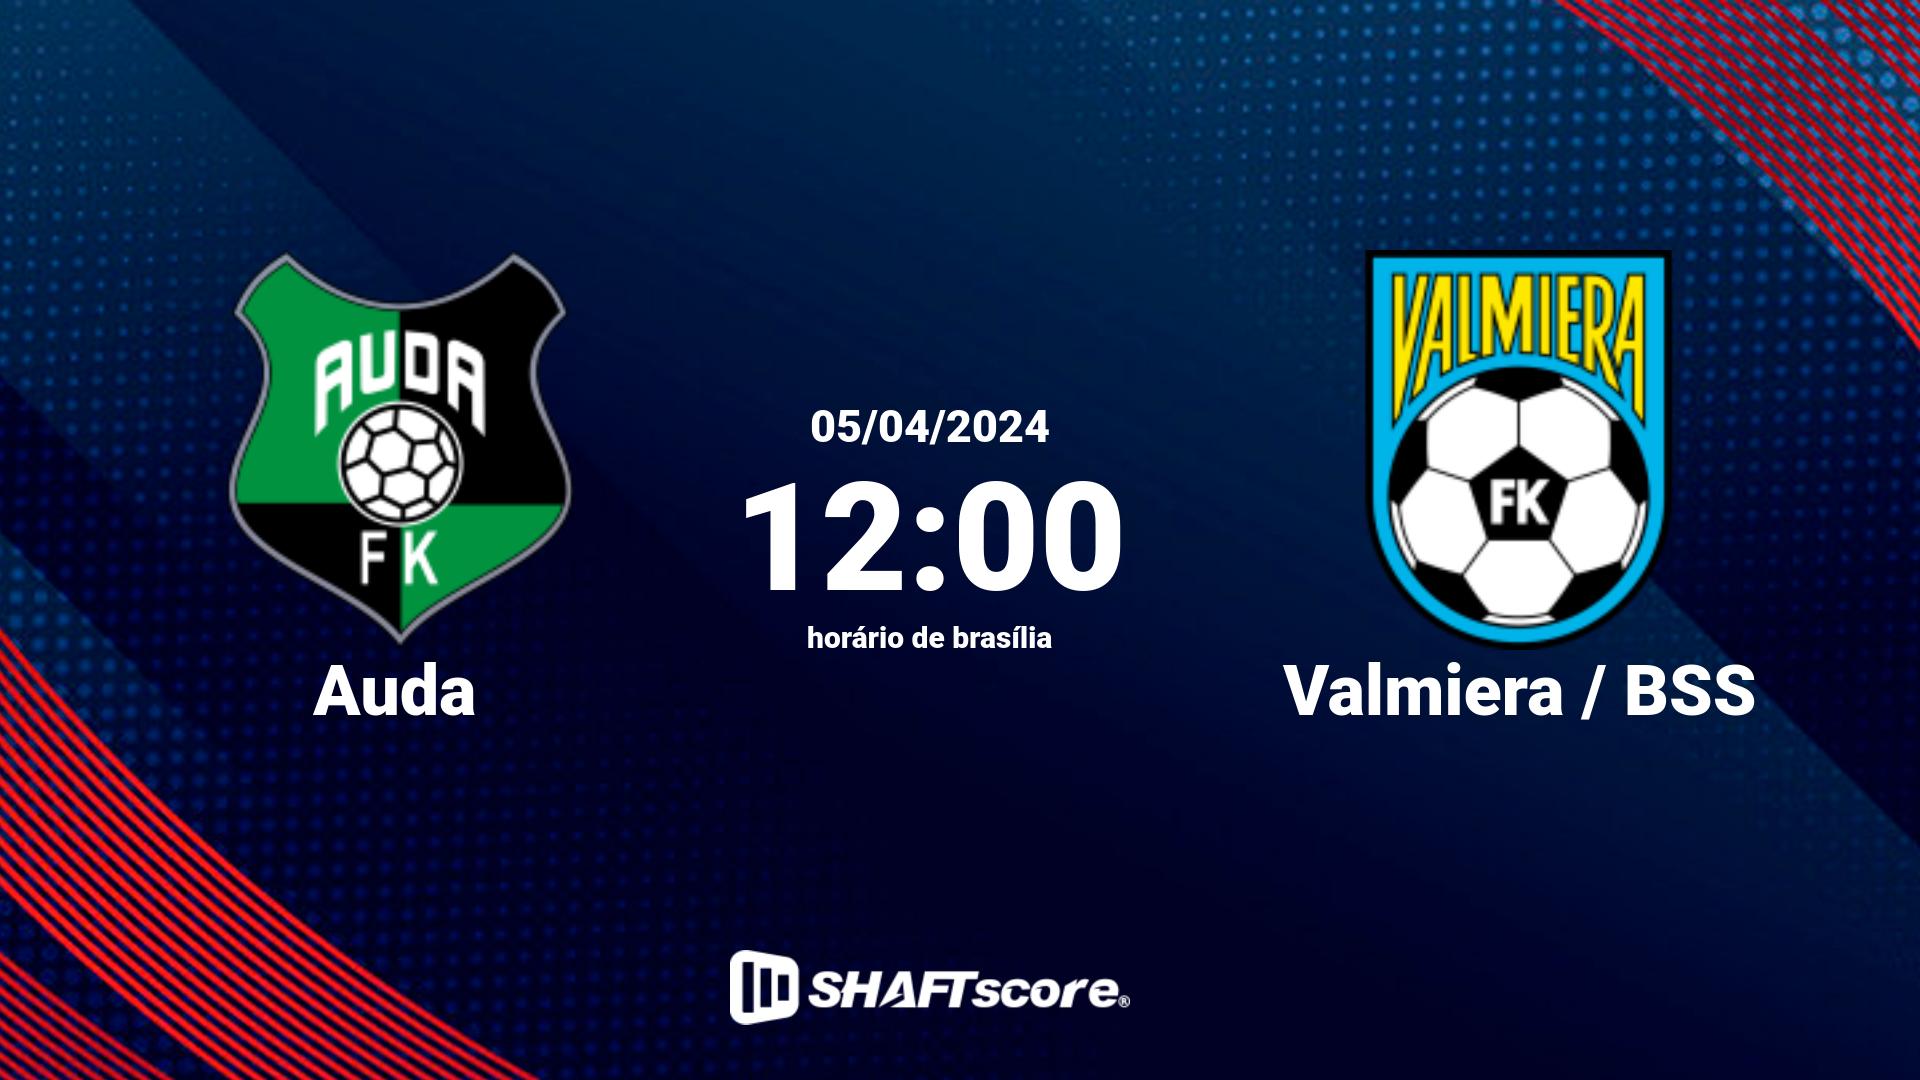 Estatísticas do jogo Auda vs Valmiera / BSS 05.04 12:00